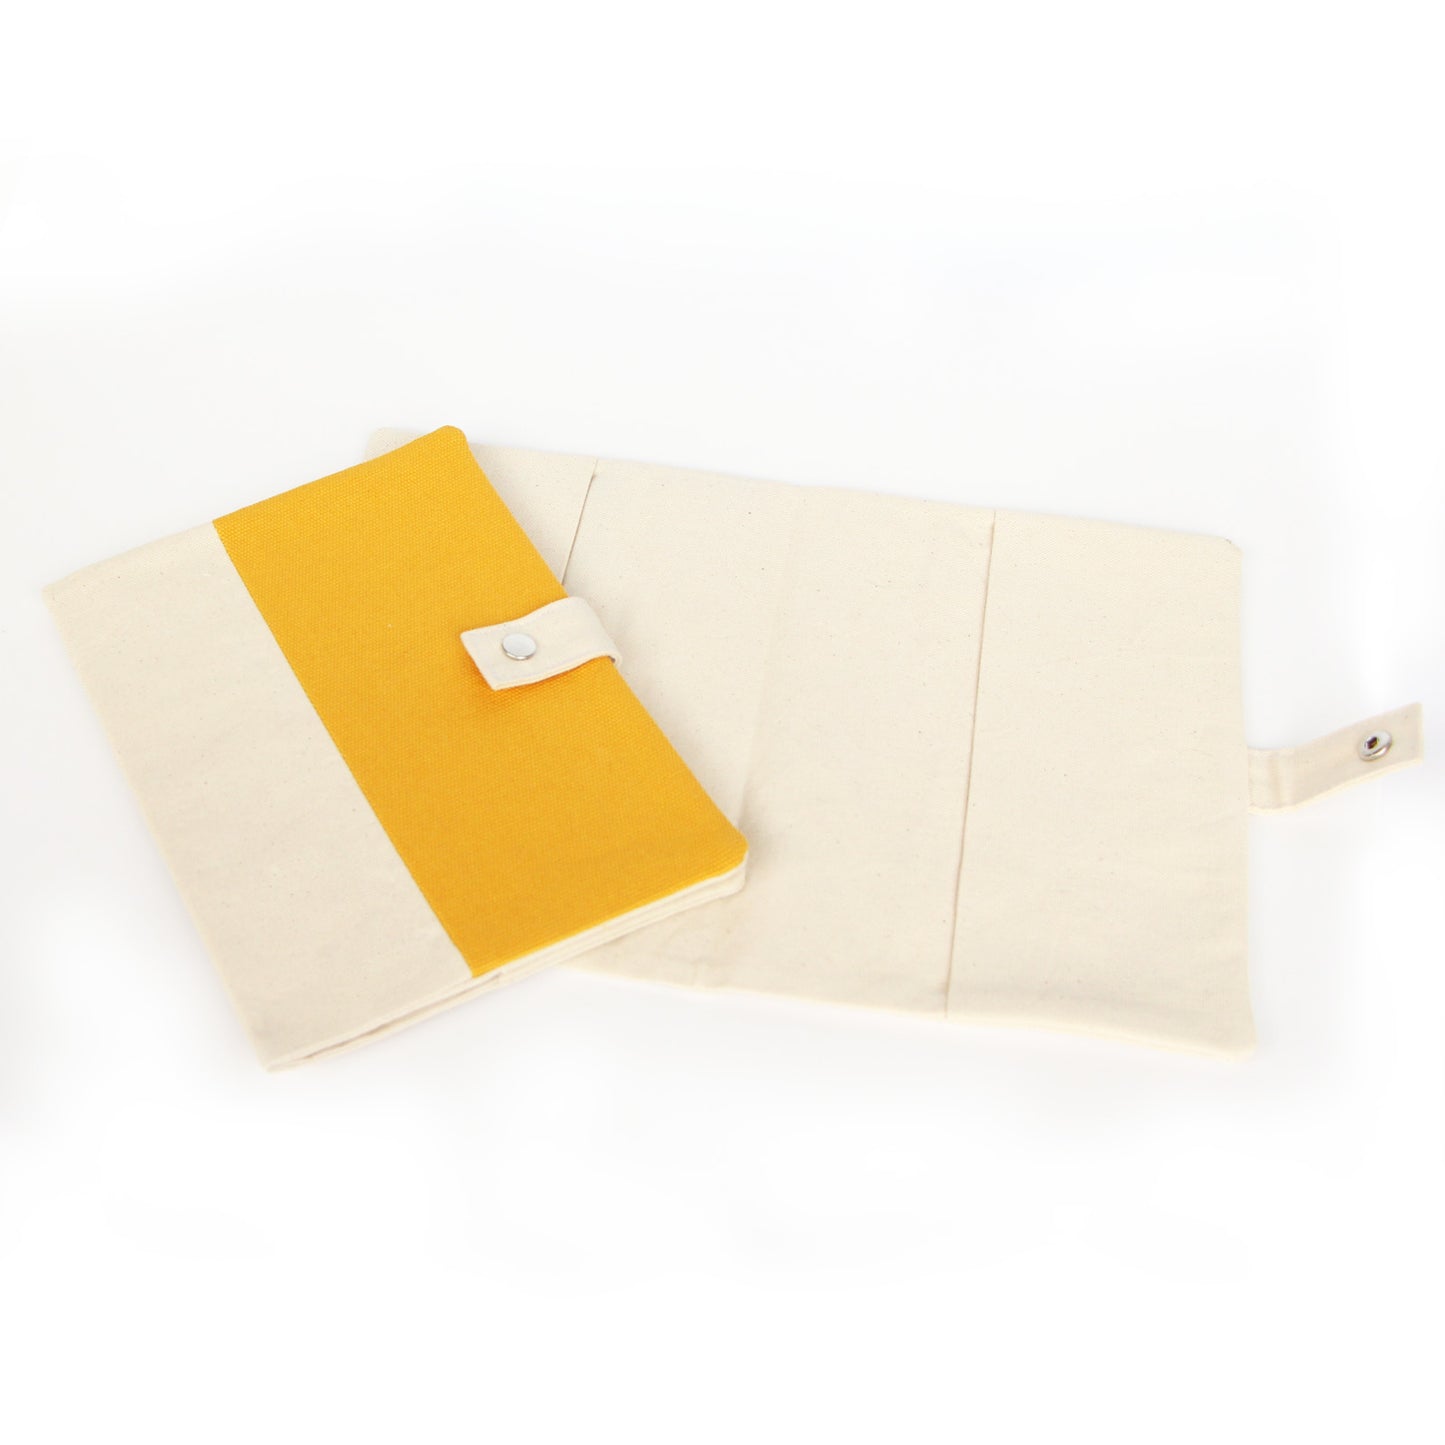 Protège carnet de sante pour animaux de compagnie jaune 16x22cm en coton